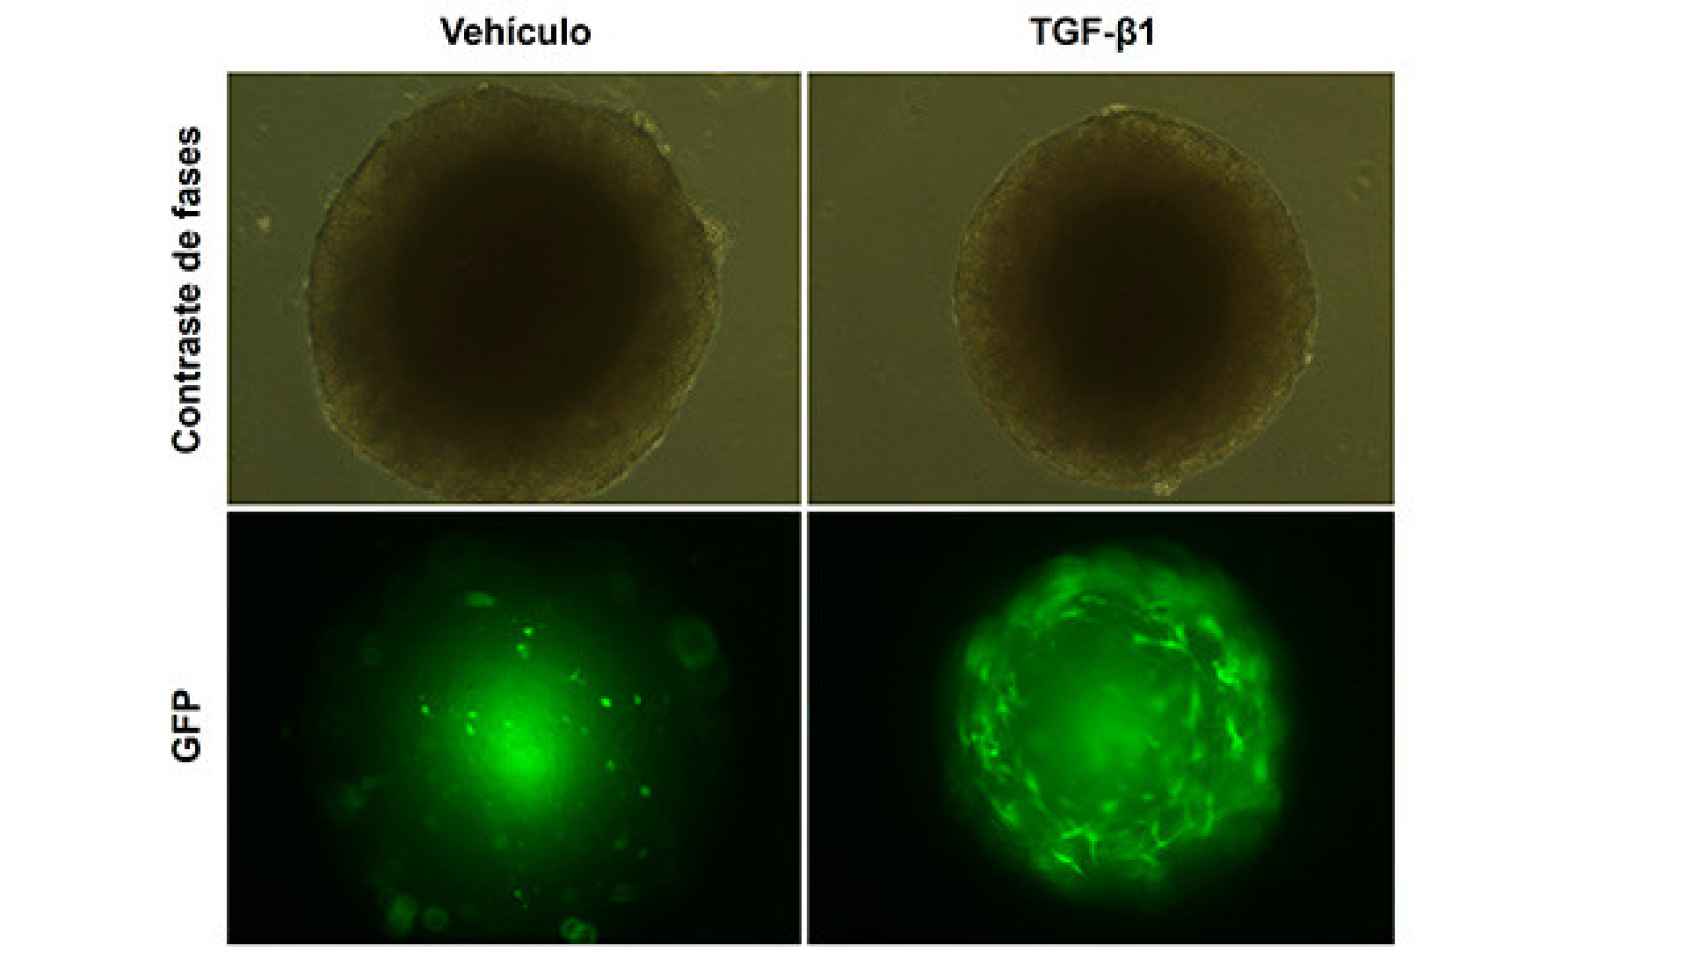 Imagen de esferoides mixtos formados por células tumorales y células hepáticas estrelladas marcadas con GFP tras el tratamiento con TGF-beta1 o el vehículo